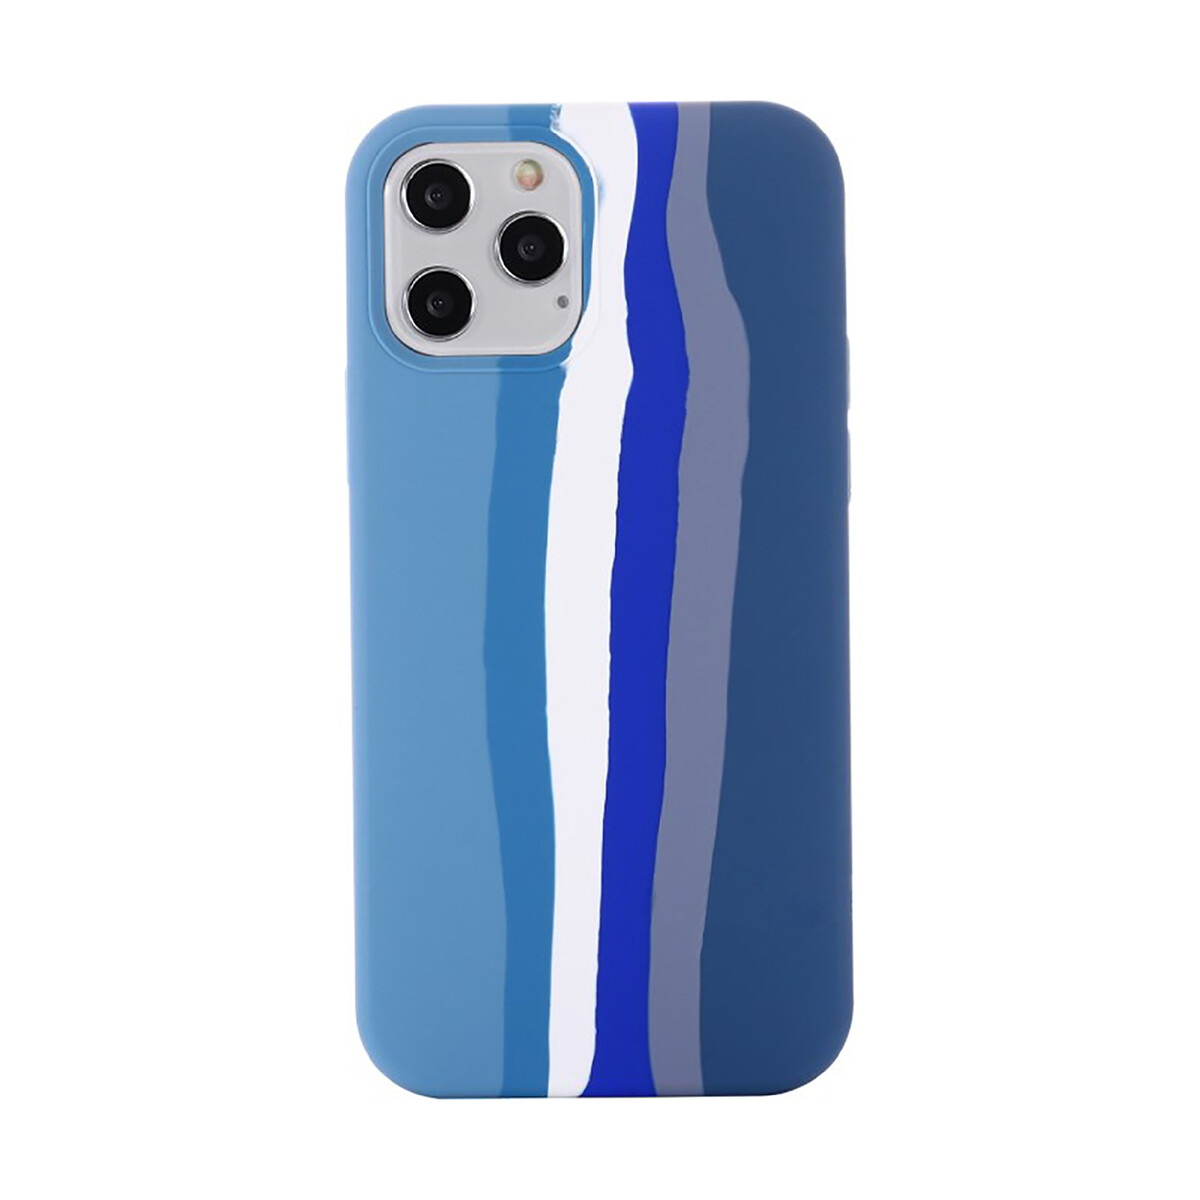 Protector funda de silicona para iphone 12 / iphone 12 pro - Azul 